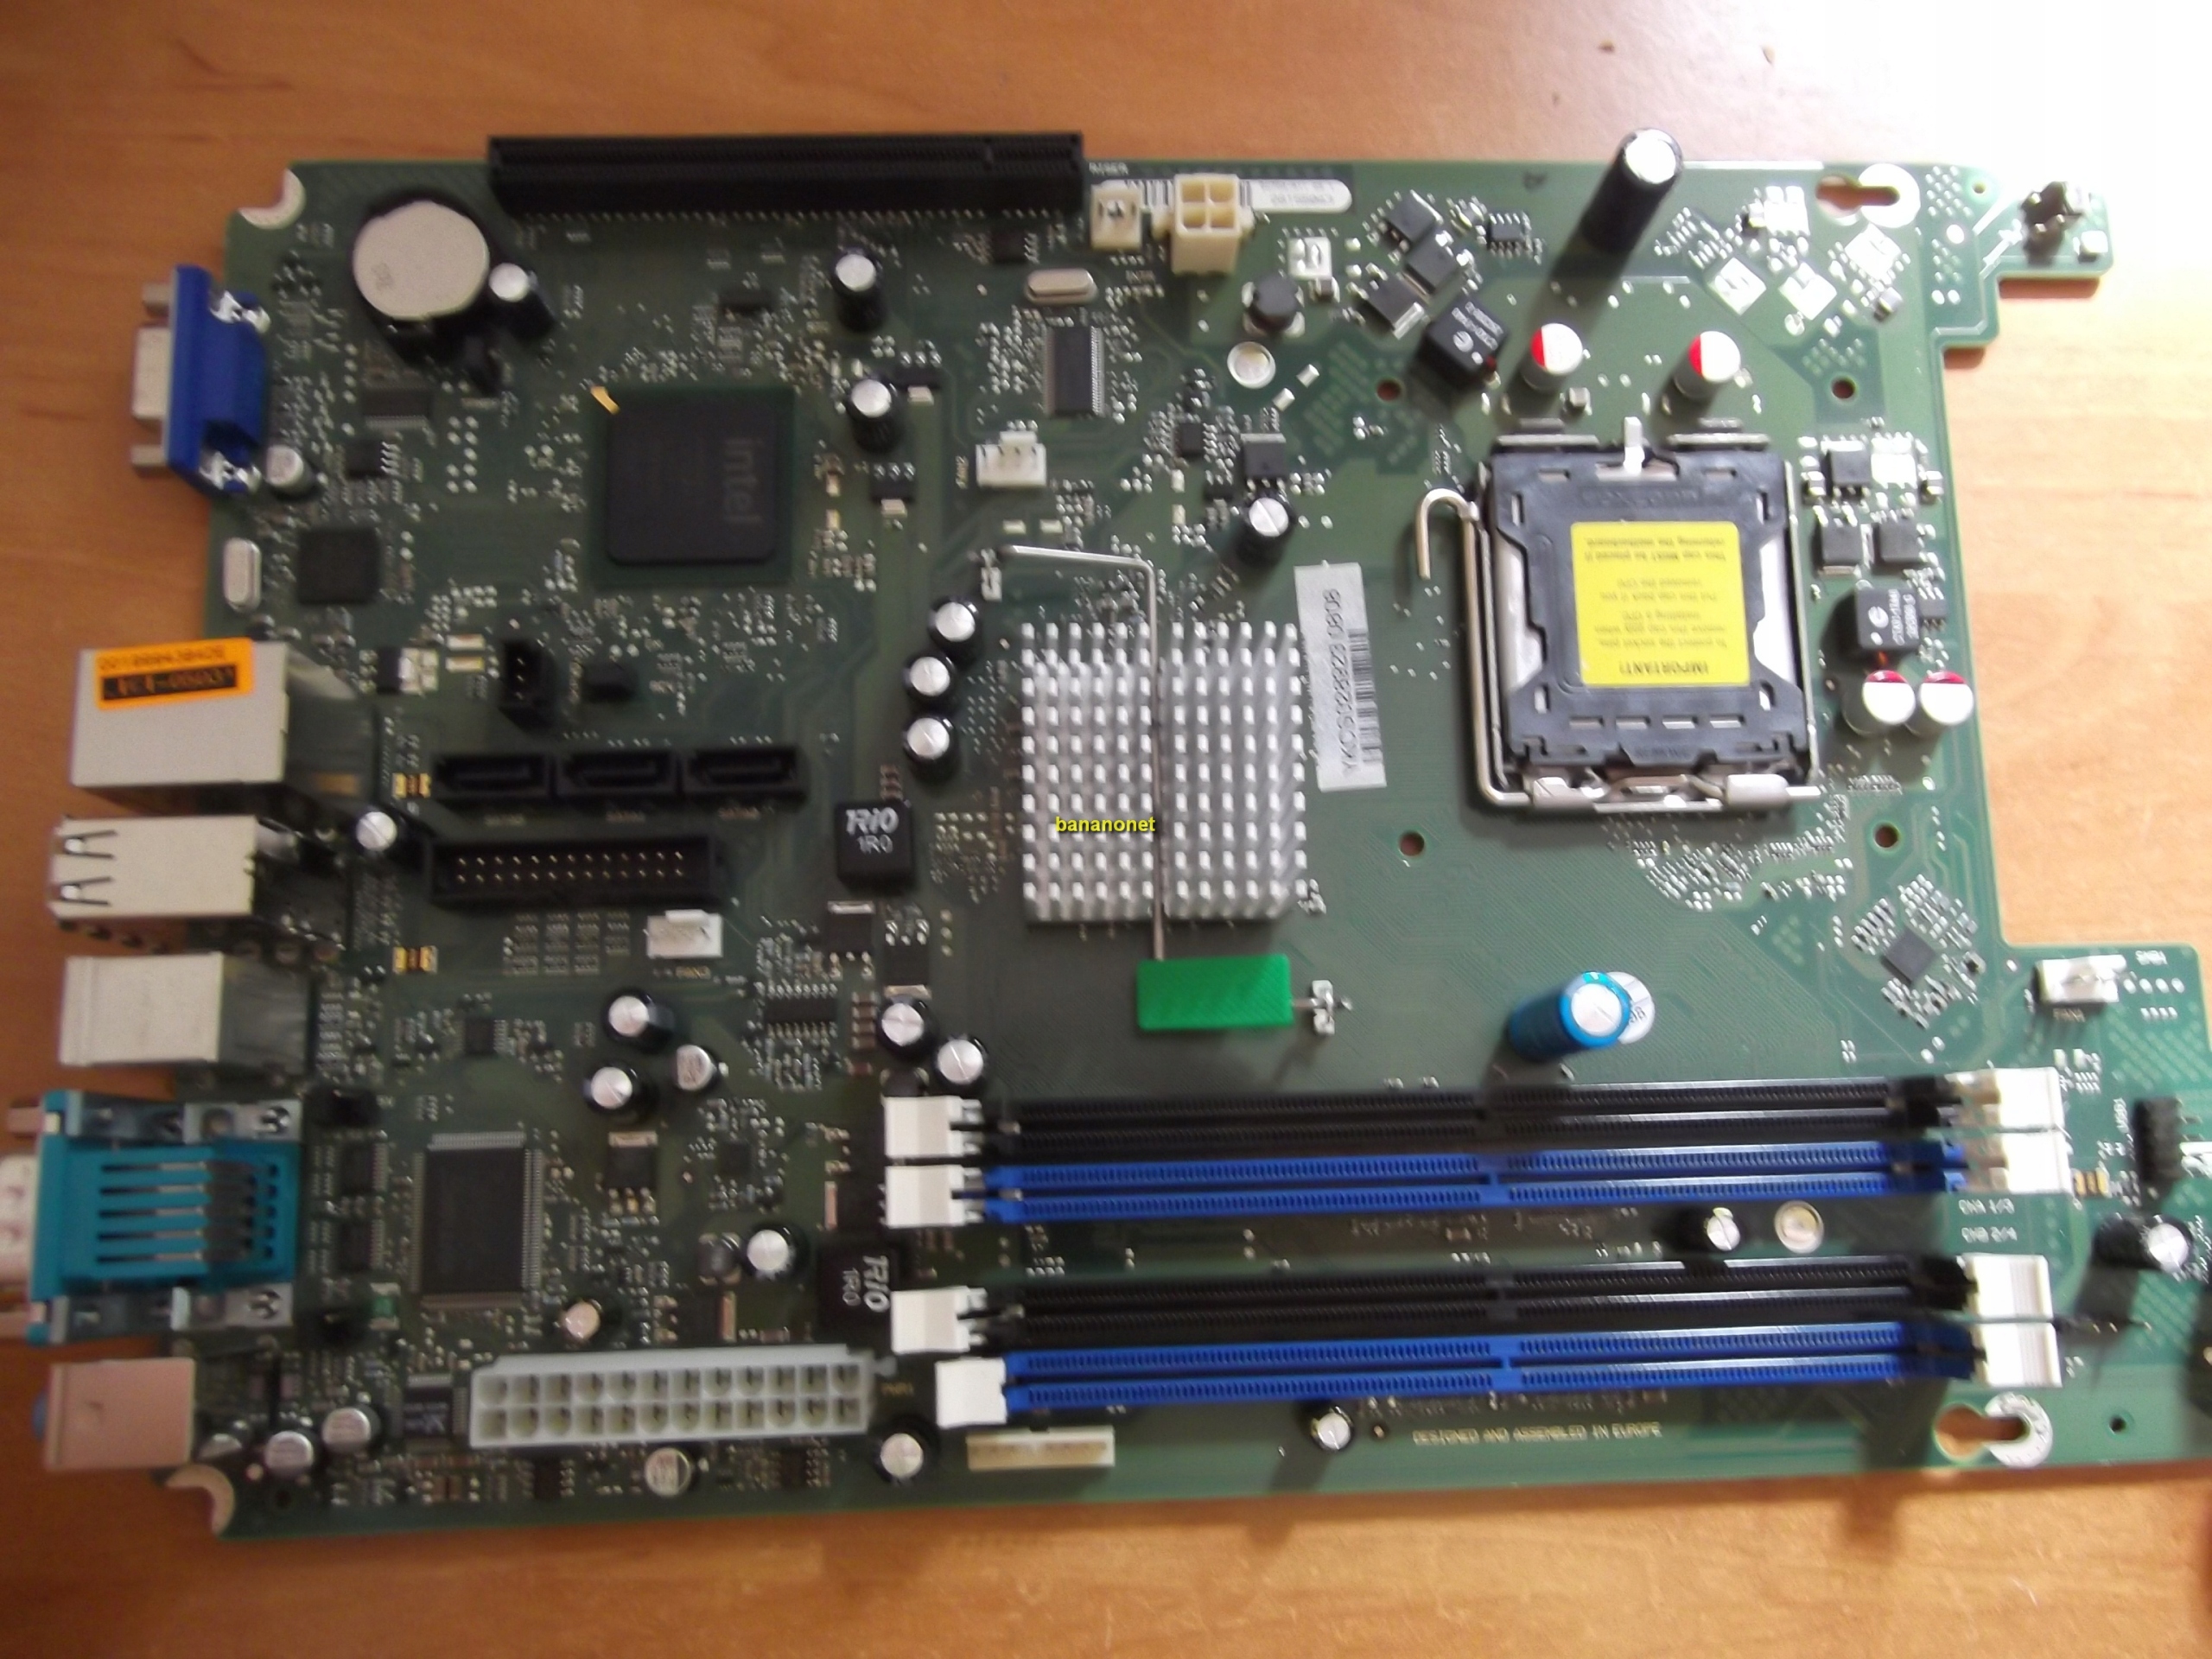 Základná doska Fujitsu D2764 Intel iQ33 DDR2 GW FV Podporované procesory Intel